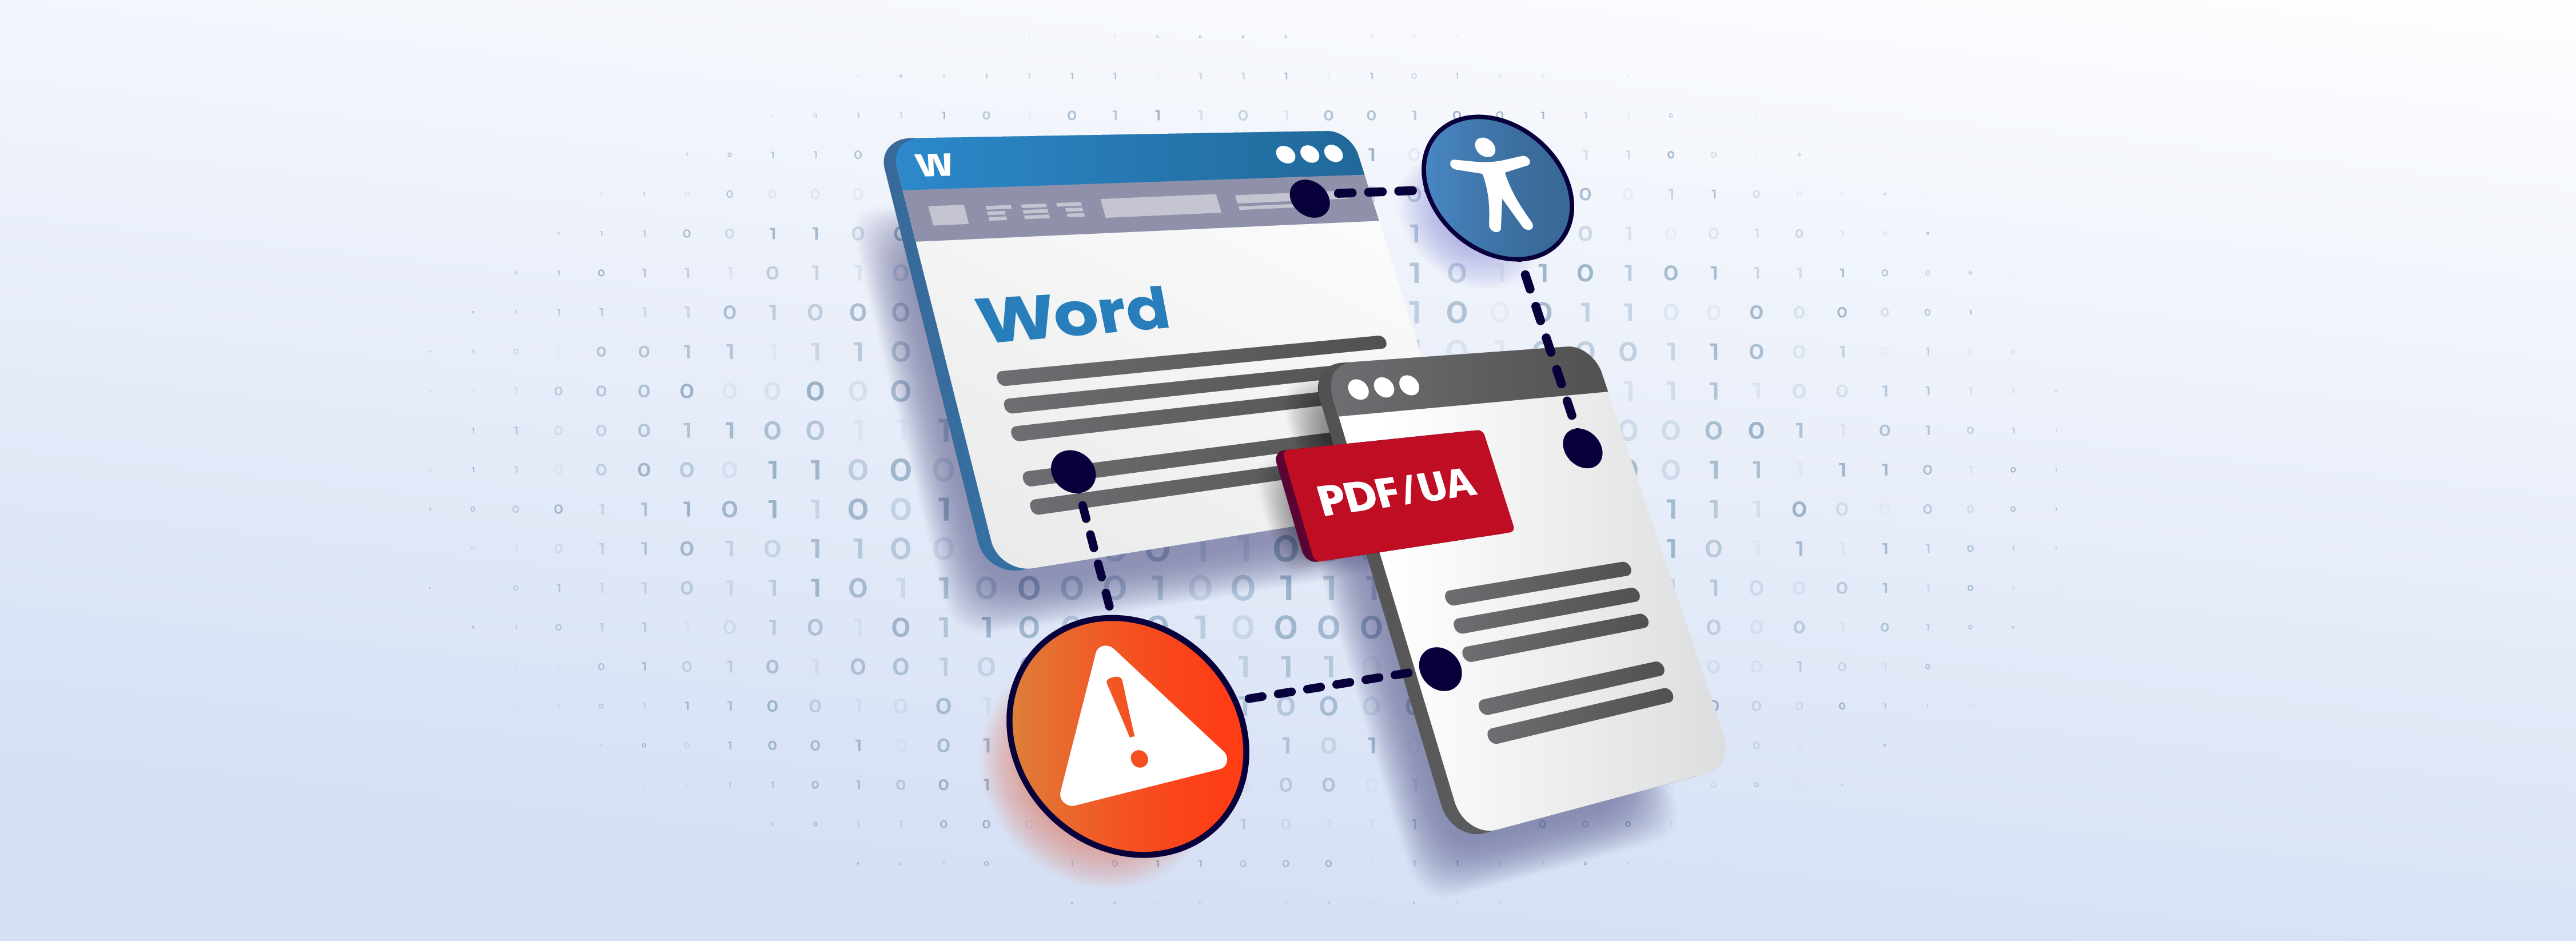 Illustration: Word-Dokument und Oberfläche einer Anwendung mit der Beschriftung "PDF/UA" sind durch zwei Linien miteinander verbunden. Die eine Linie ist mit einem Icon "digitale Barrierefreiheit" spezifiziert, die andere mit einem Symbol: Dreieick mit einem Ausrufezeichen.